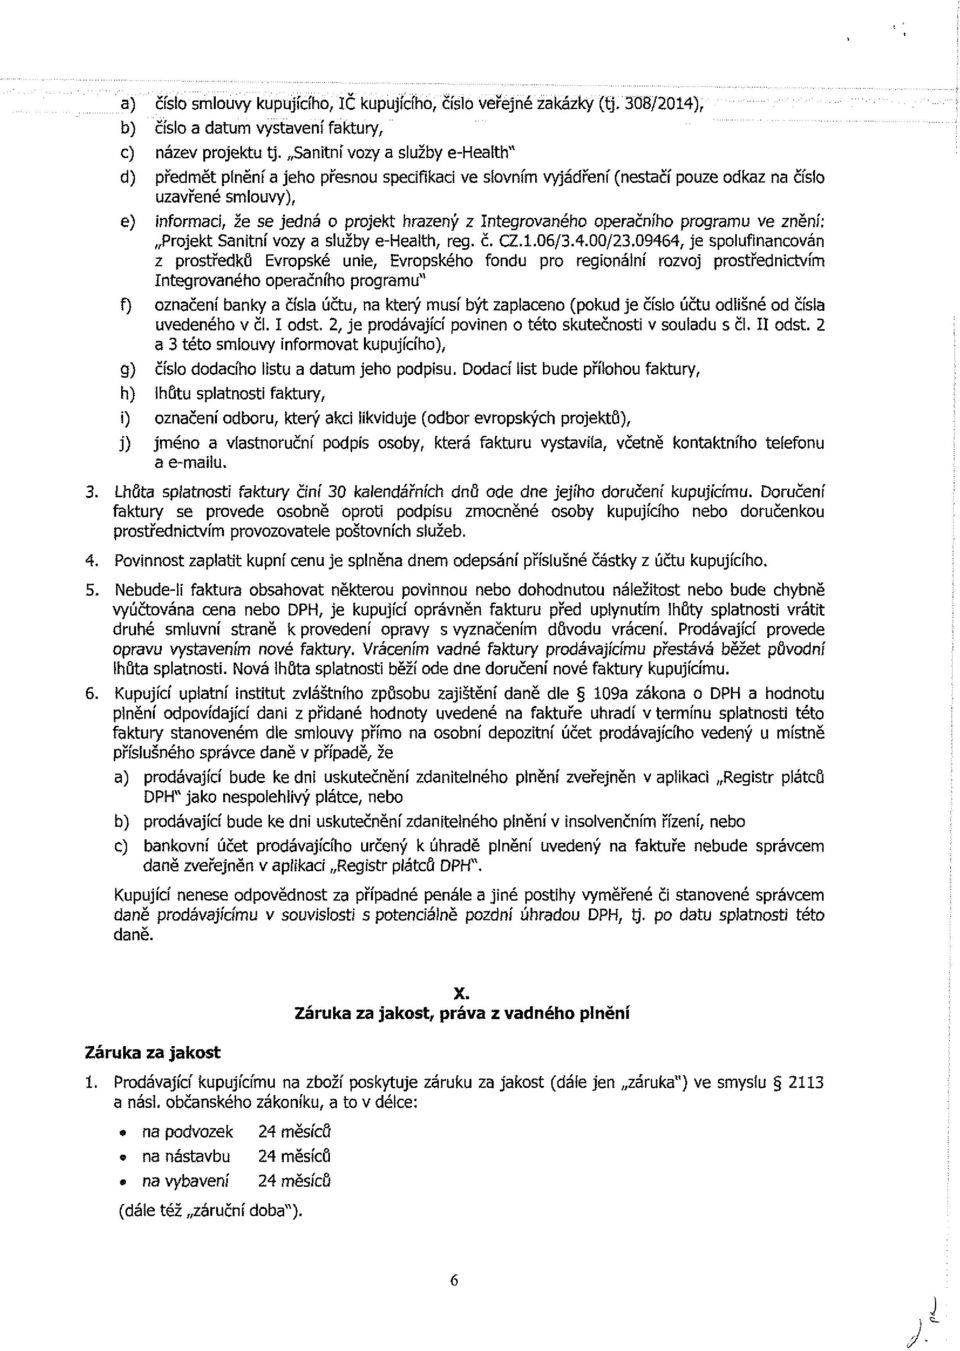 Integrovaného operačního programu ve znění: Projekt Sanitní vozy a služby e-health, reg. č. CZ.1.06/3.4.00/23.